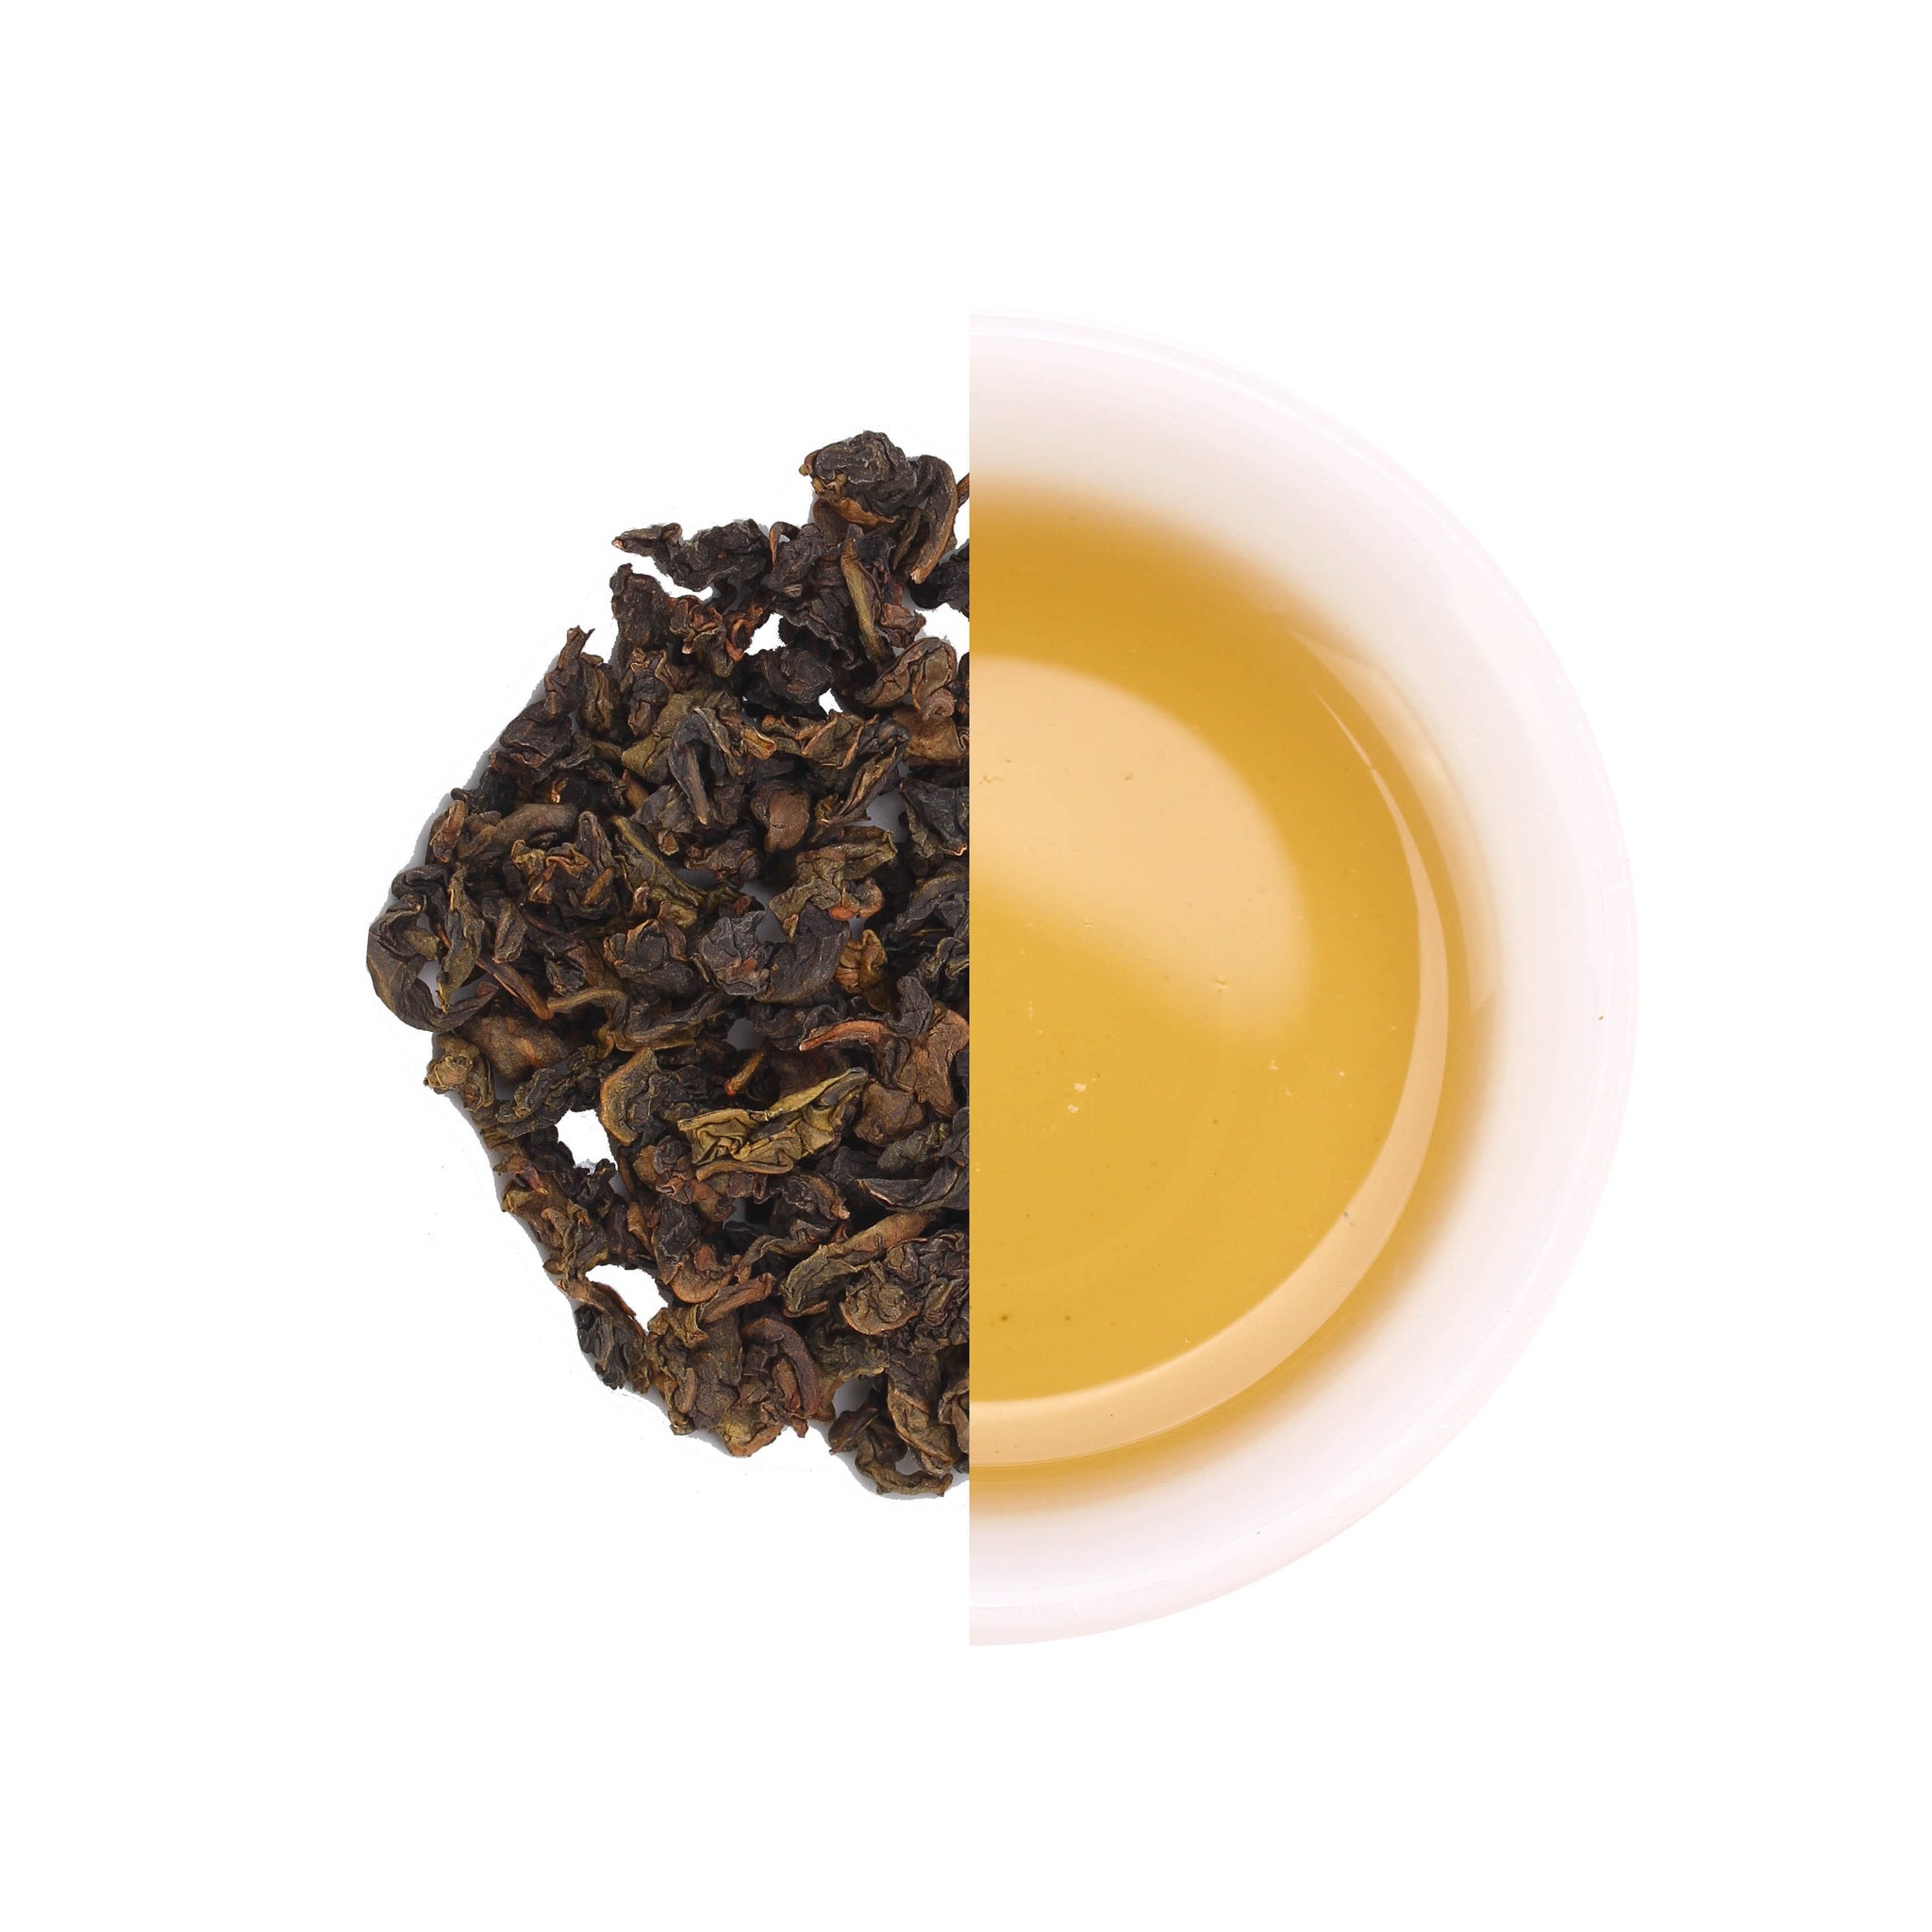 Oolong Tea: The Brew That Bridges the Gap between Green and Black Tea